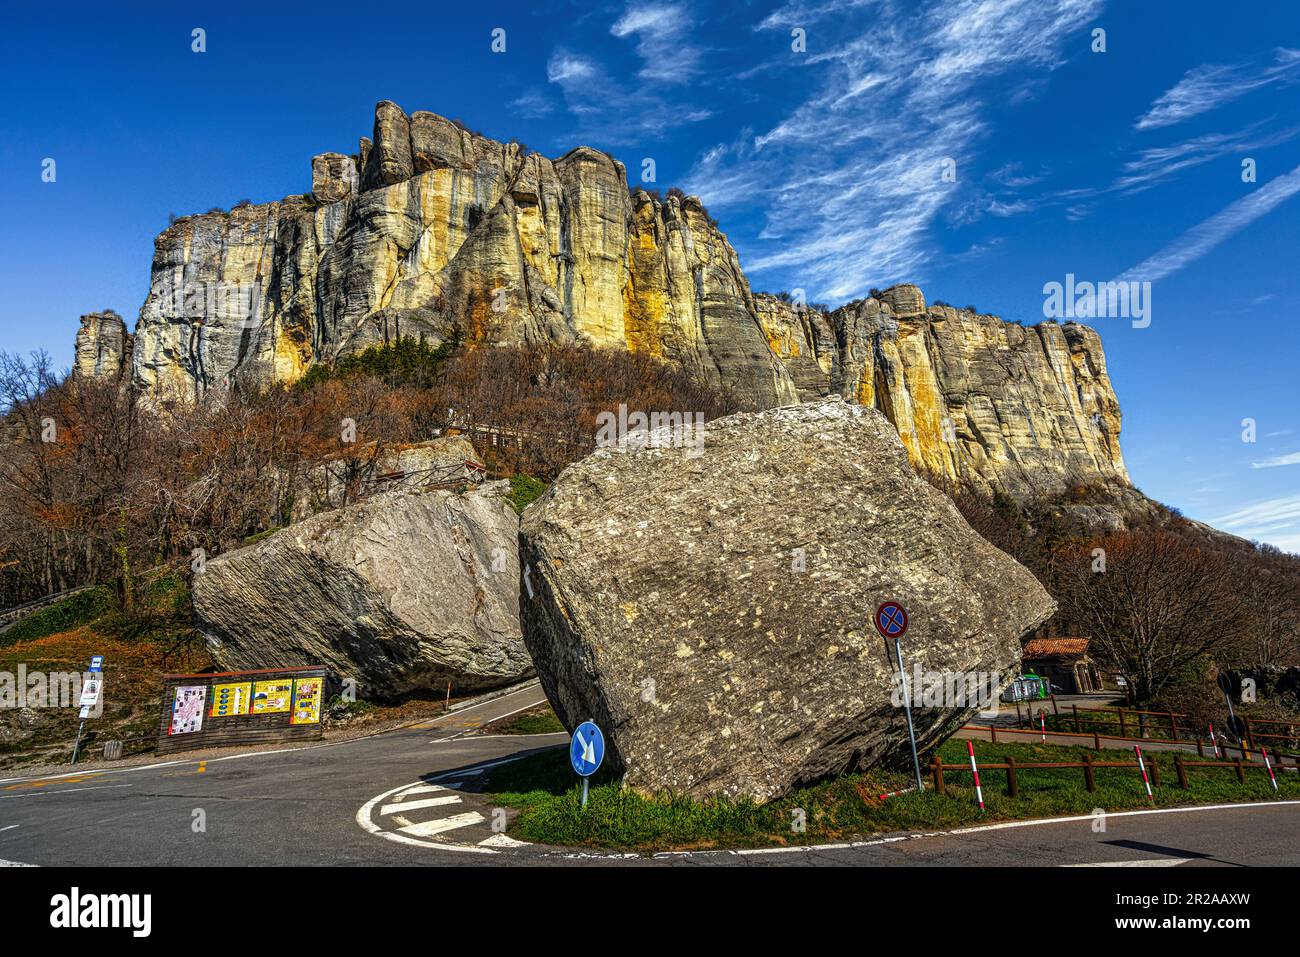 La pietra di Bismantova vista da terra. Castelnovo ne' Monti, provincia di Reggio Emilia, Emilia Romagna, Italia. Foto Stock